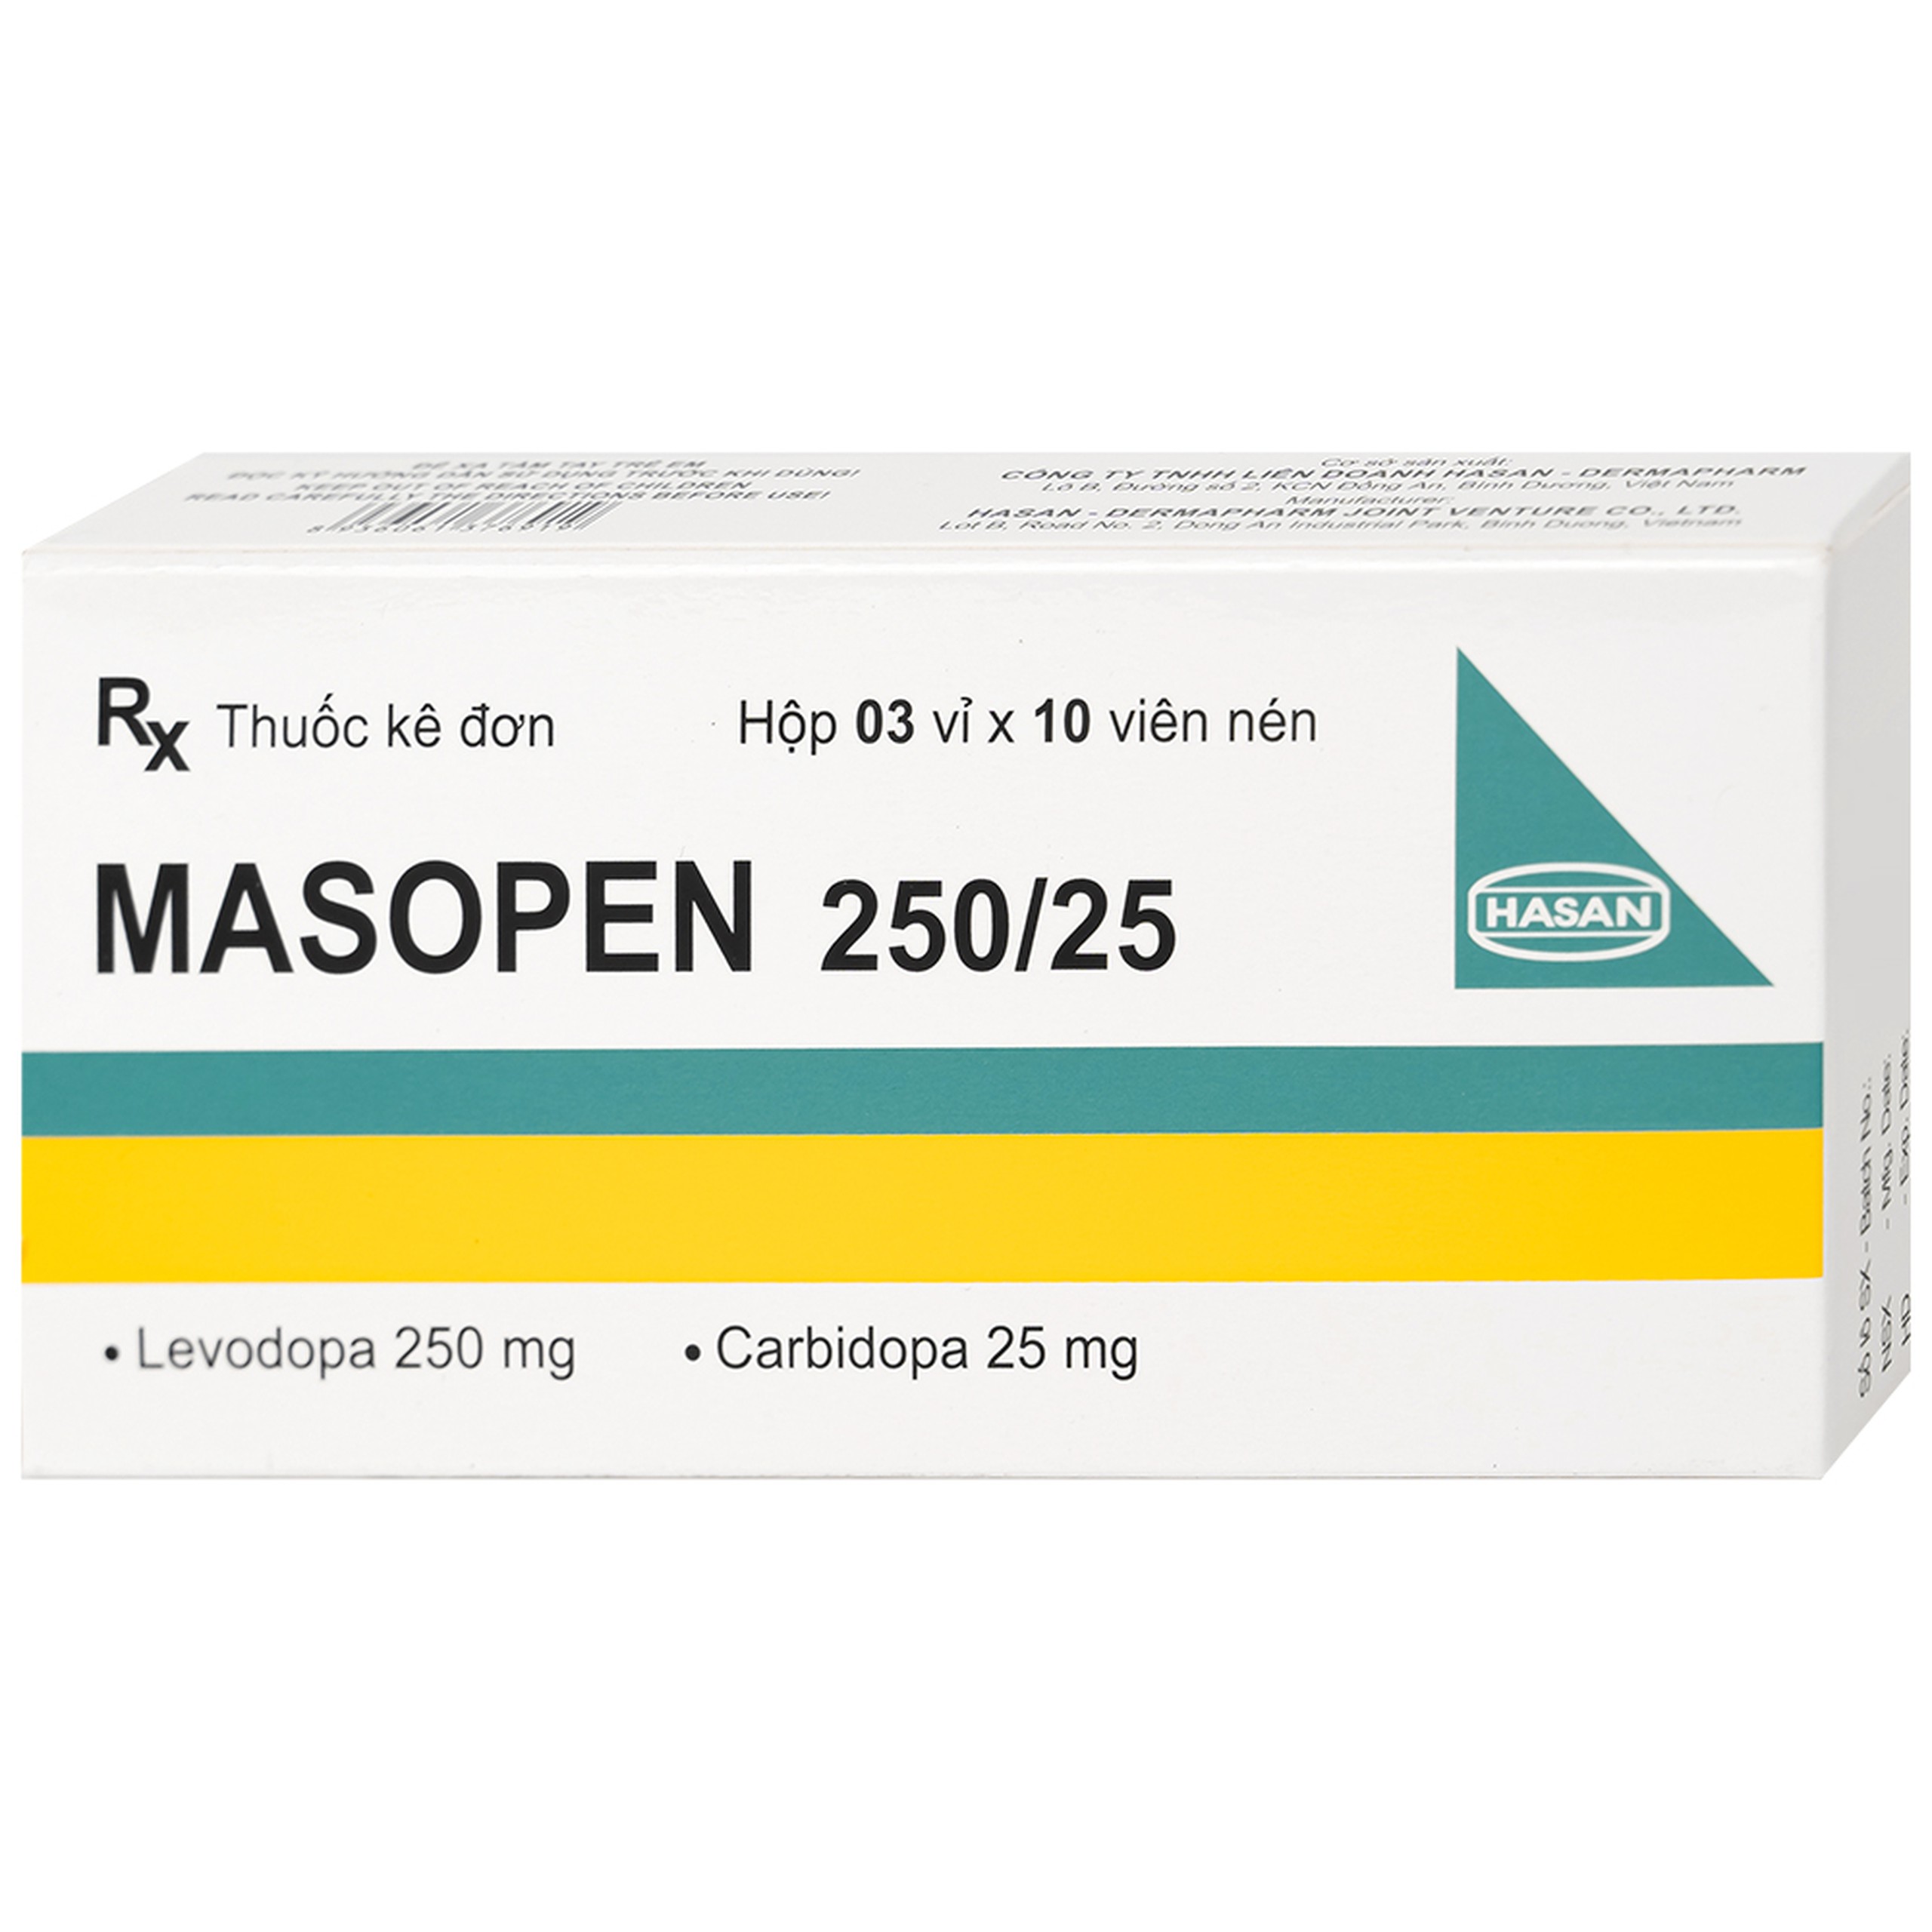 Thuốc Masopen 250/25 Hasan điều trị triệu chứng bệnh parkinson (3 vỉ x 10 viên)